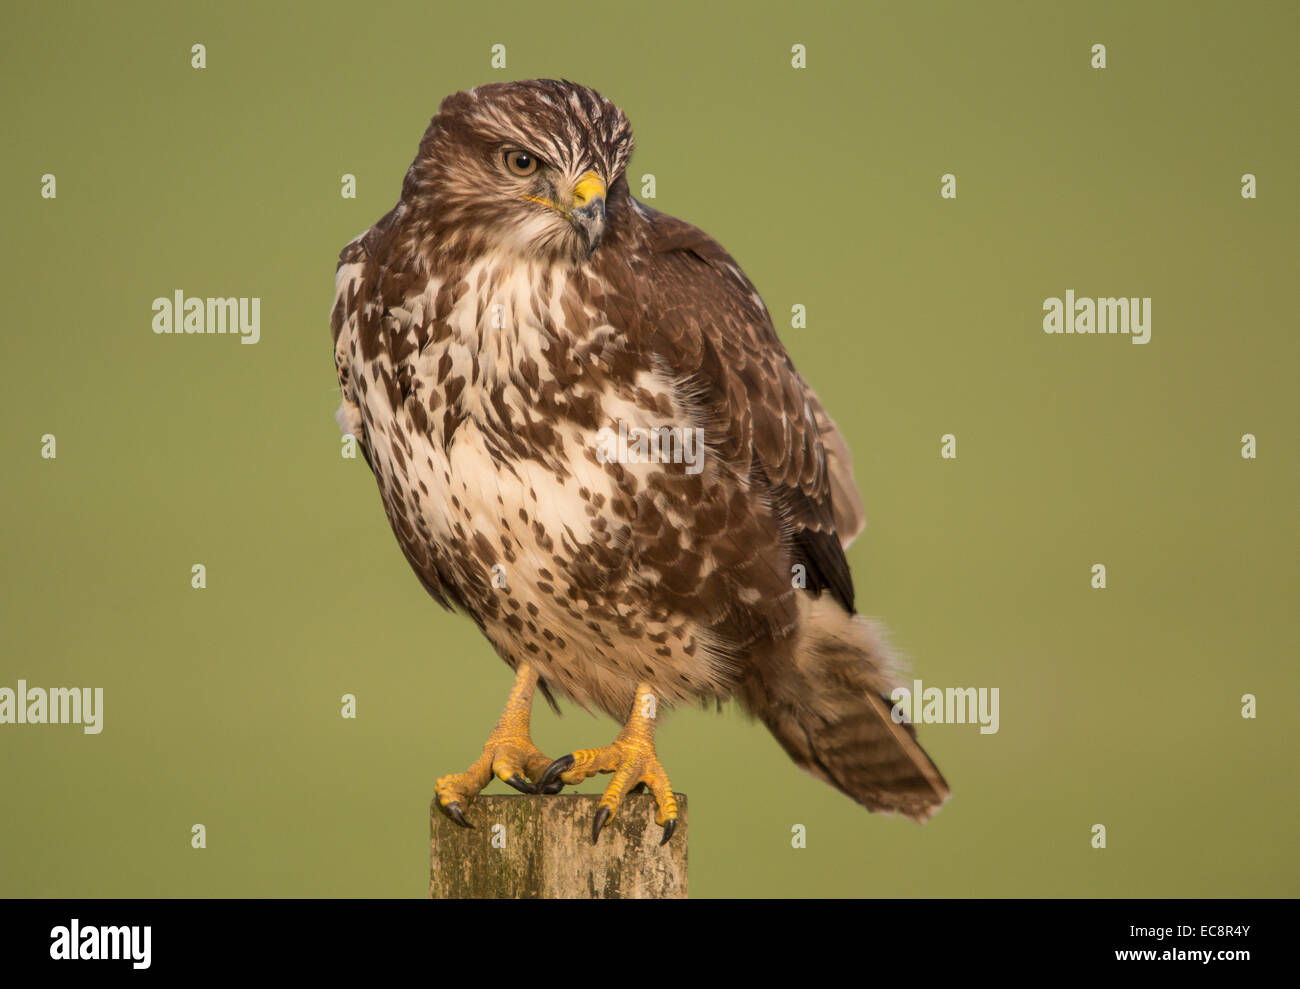 Common buzzard in search of prey Stock Photo